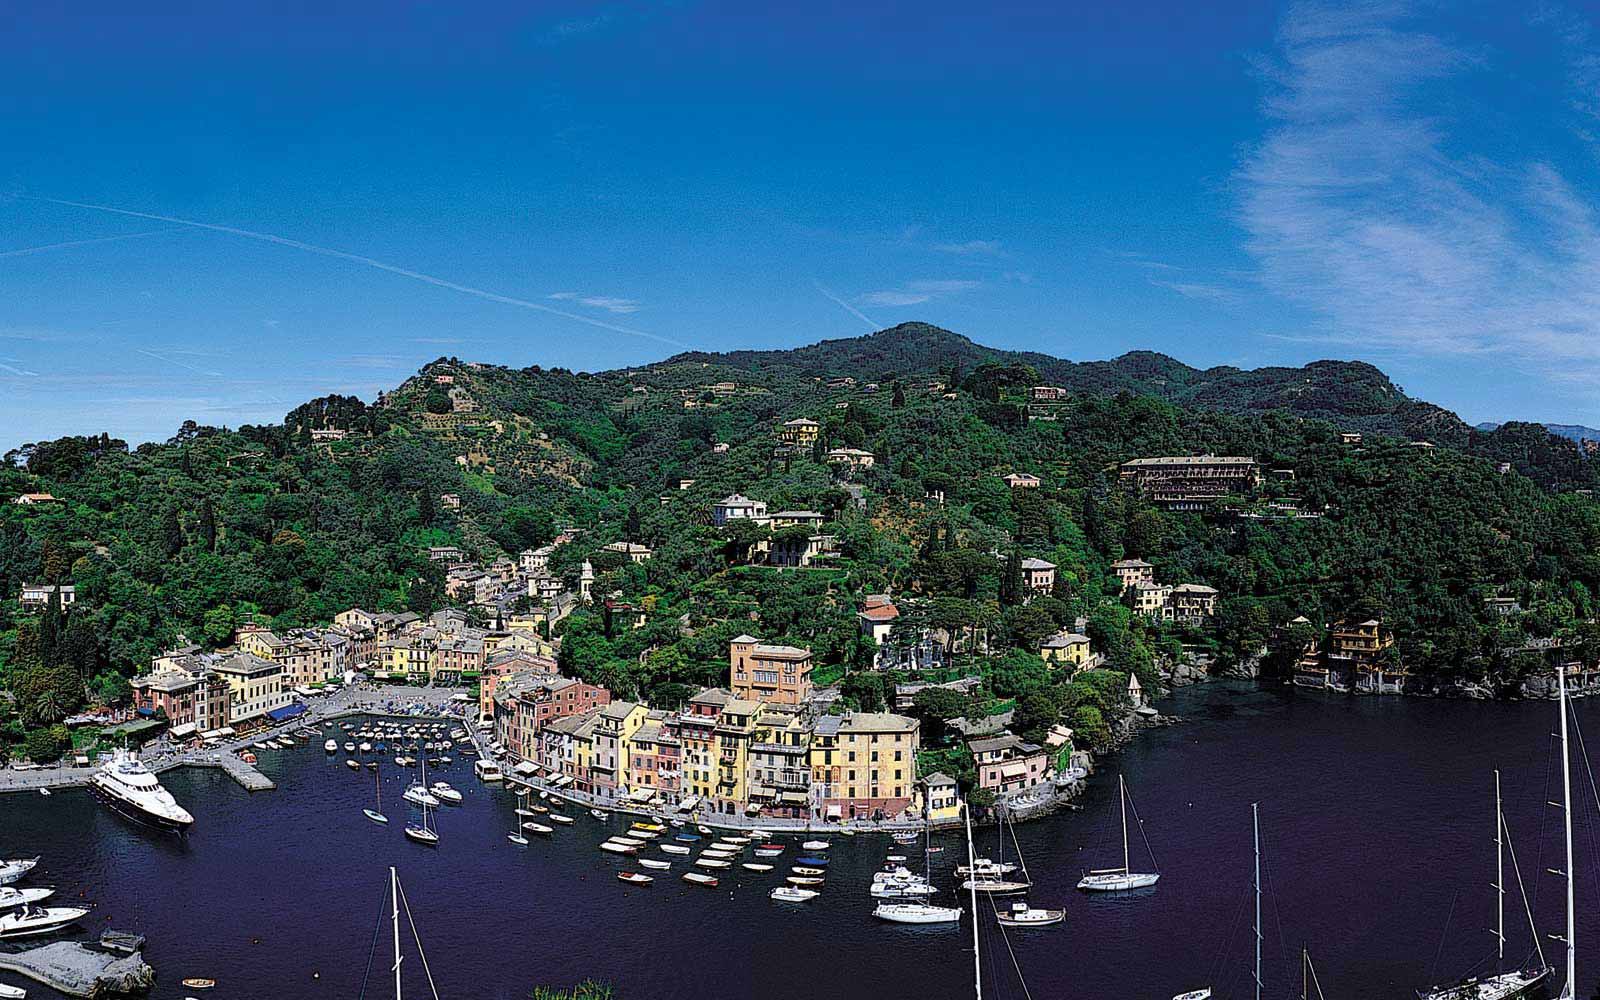 Belmond Hotel Splendido & Splendido Mare - Portofino